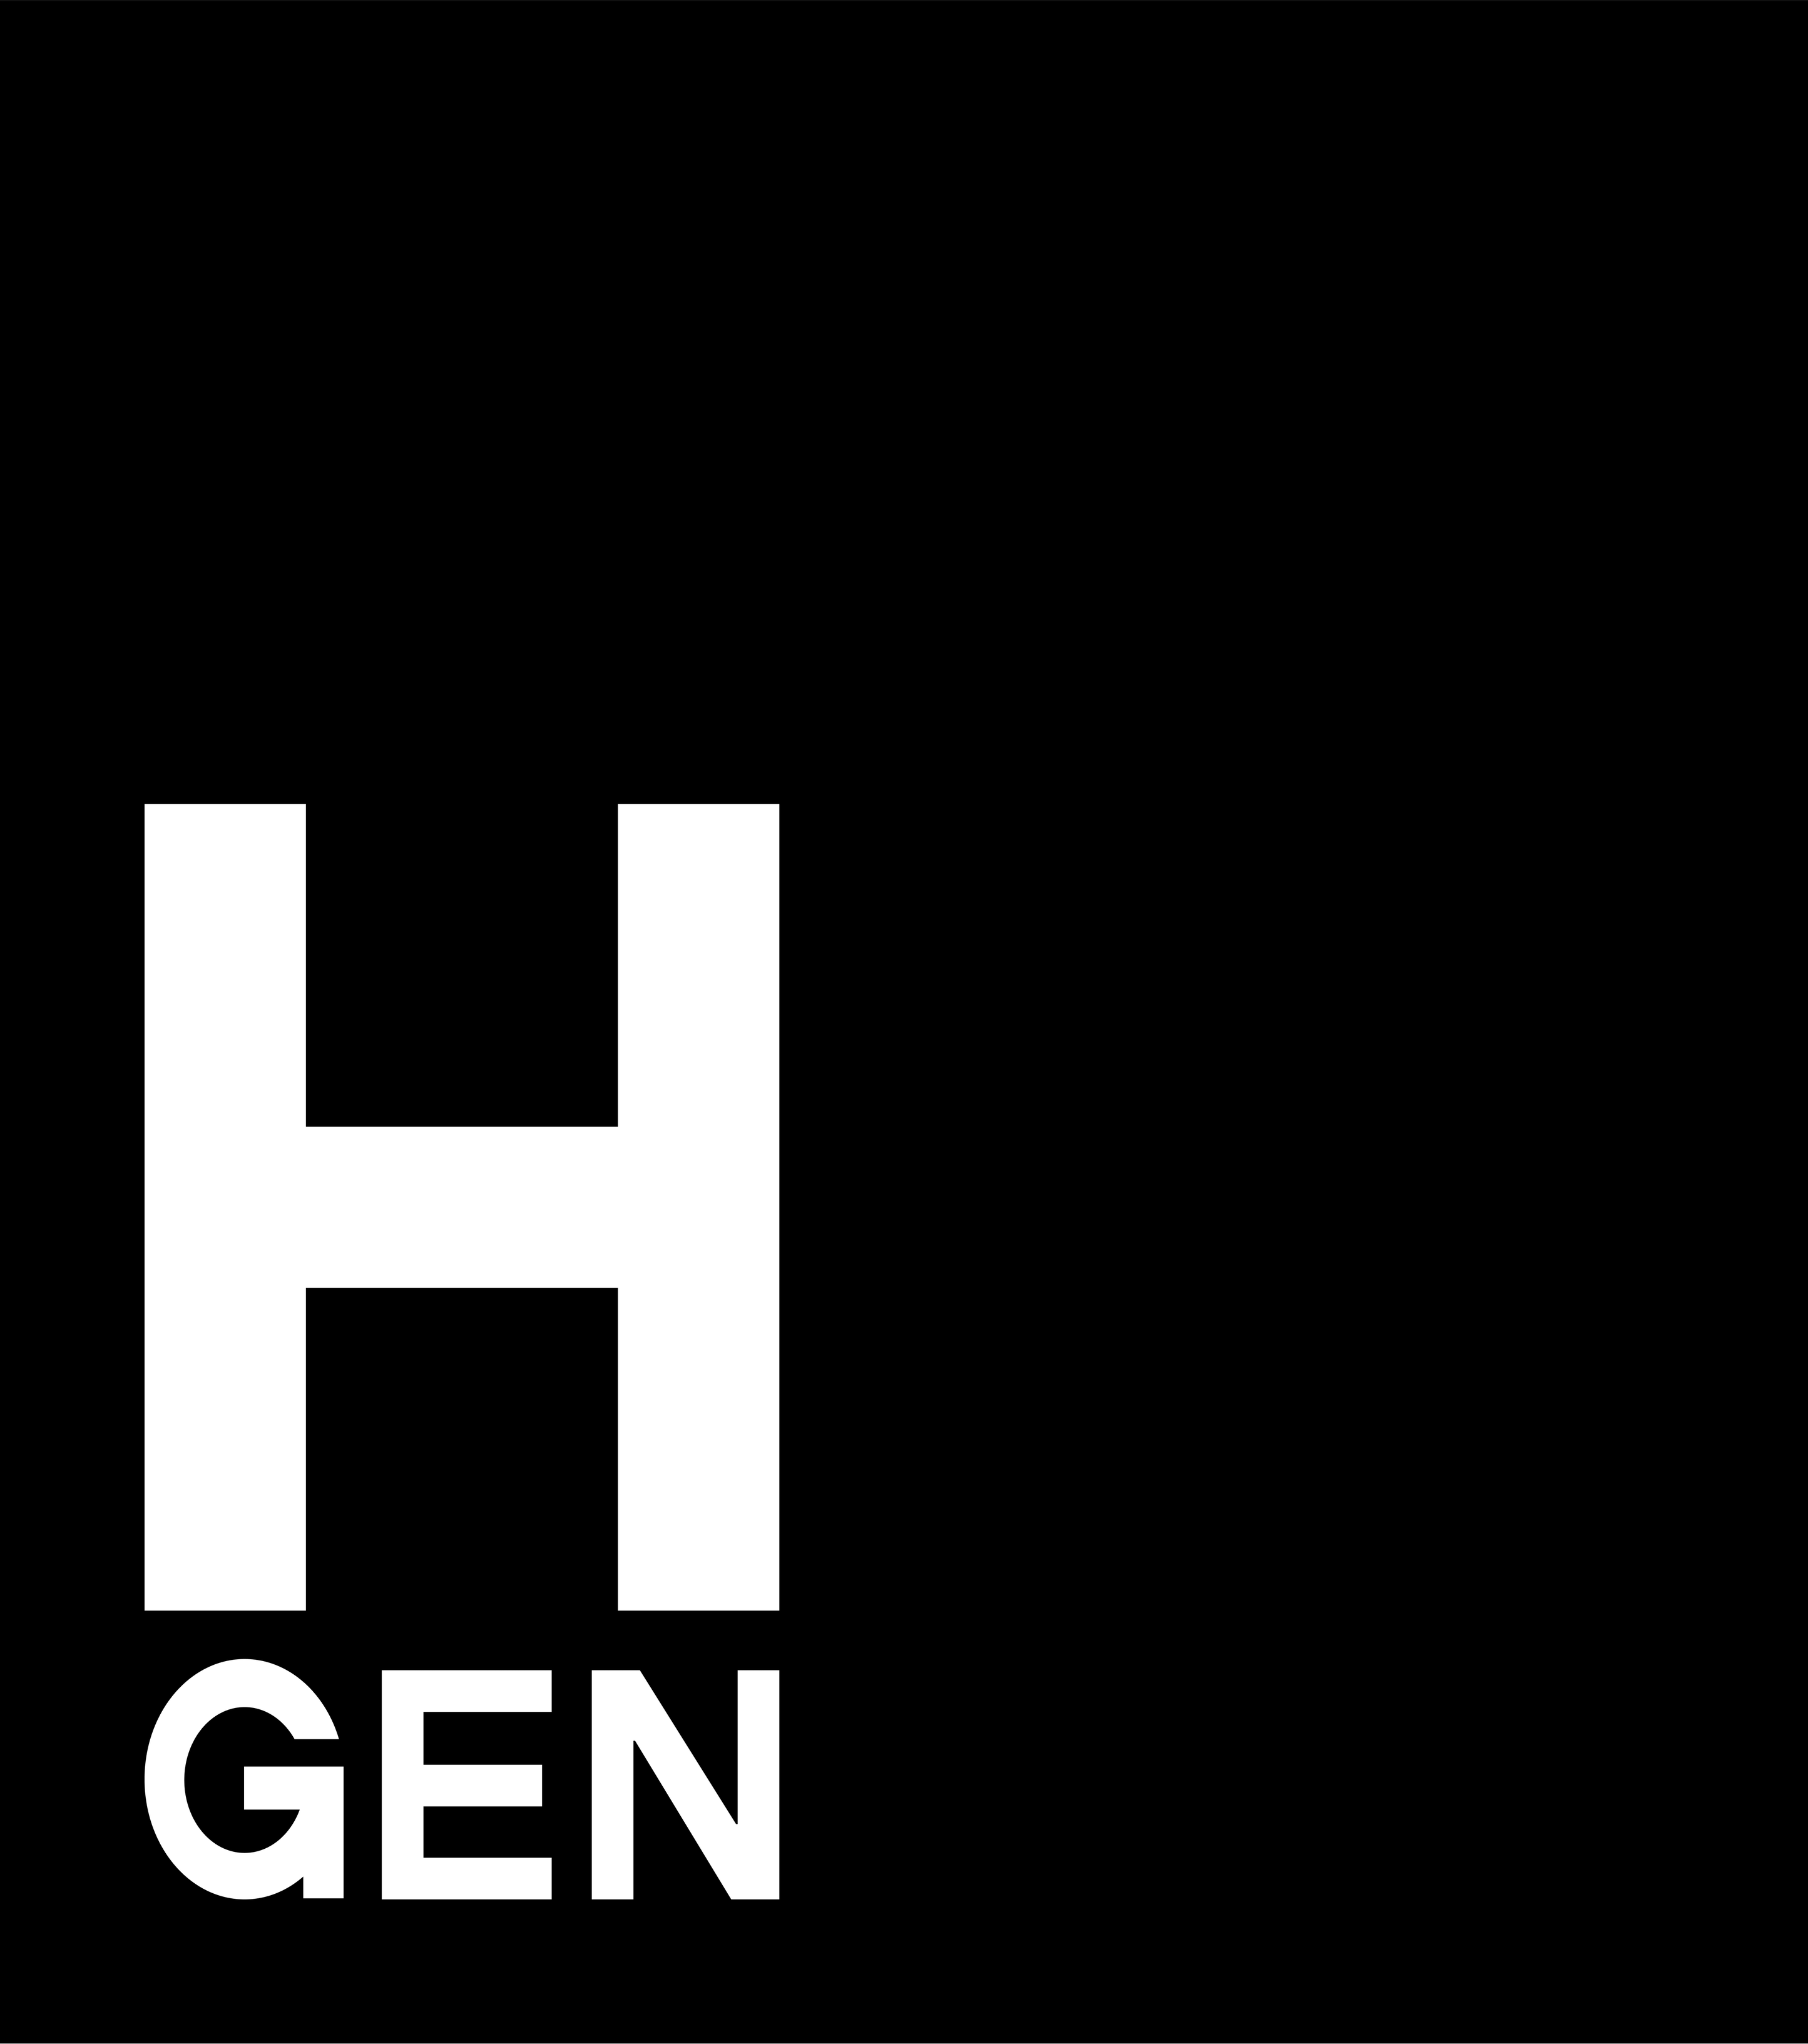 orter_logos/hgenLogo company logo